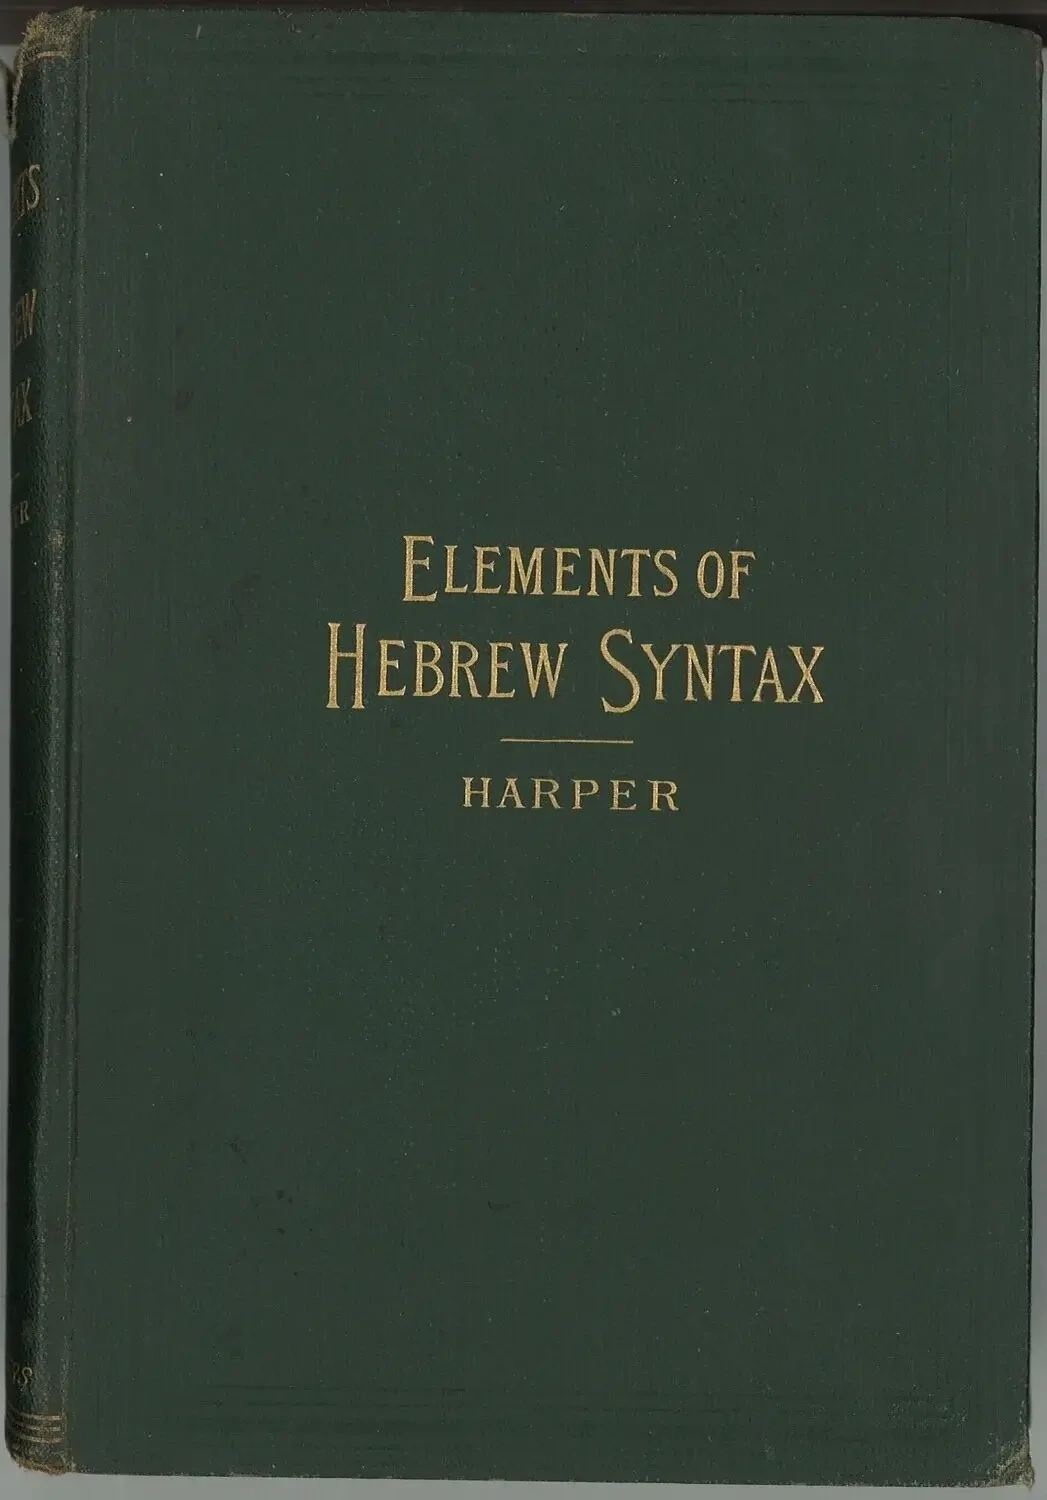 Elements of Hebrew Syntax, William Rainey Harper